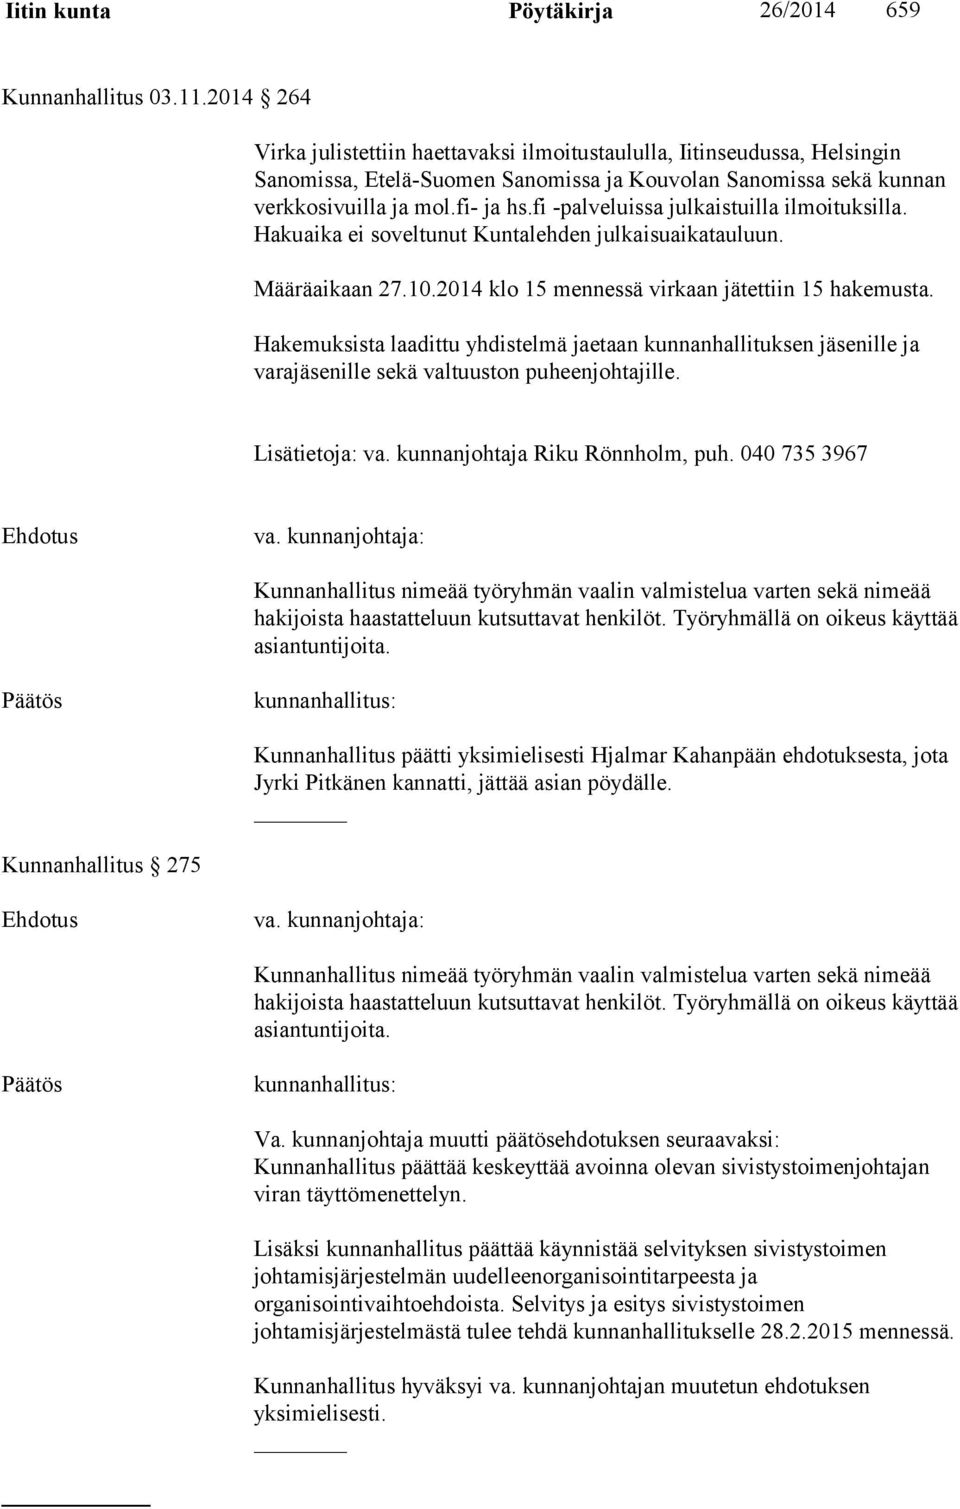 fi -palveluissa julkaistuilla ilmoituksilla. Hakuaika ei soveltunut Kuntalehden julkaisuaikatauluun. Määräaikaan 27.10.2014 klo 15 mennessä virkaan jätettiin 15 hakemusta.